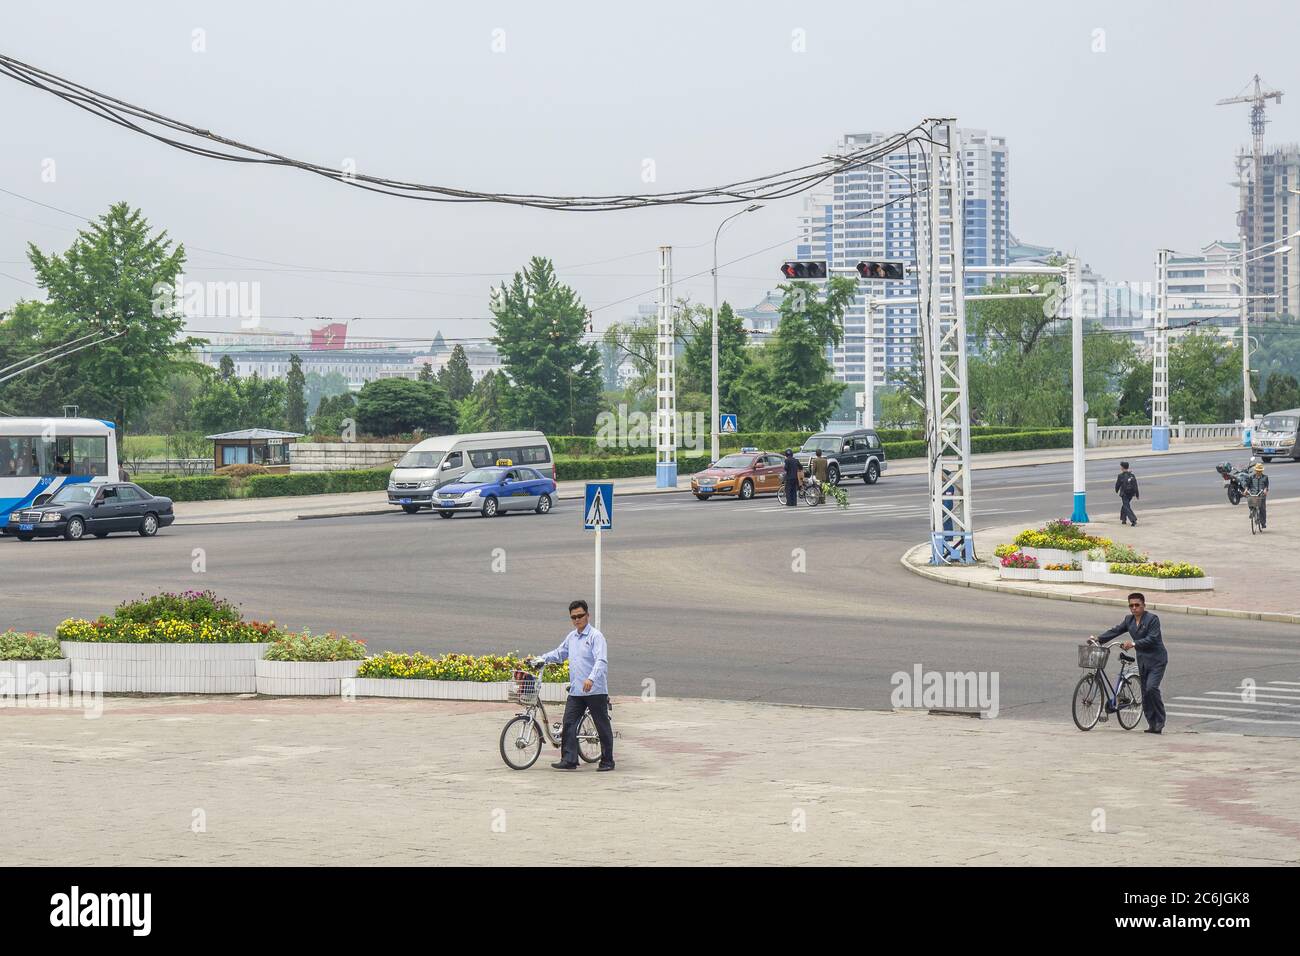 Ville typique de rue, Pyongyang, République populaire démocratique de Corée (RPDC), Corée du Nord Banque D'Images